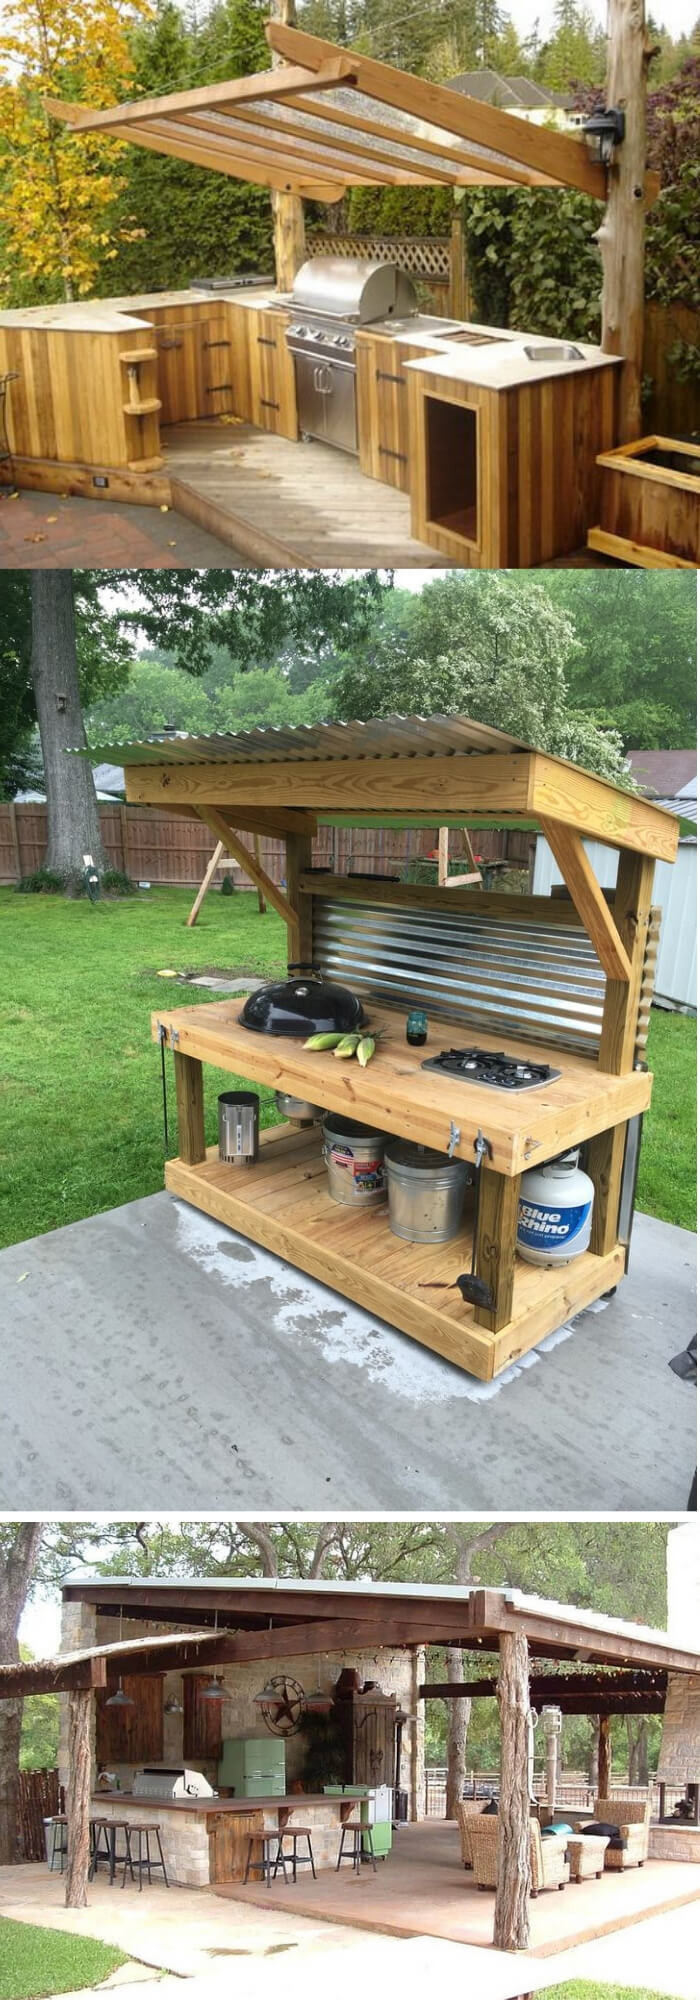 Diy Outdoor Kitchen Ideas
 31 Stunning Outdoor Kitchen Ideas & Designs With